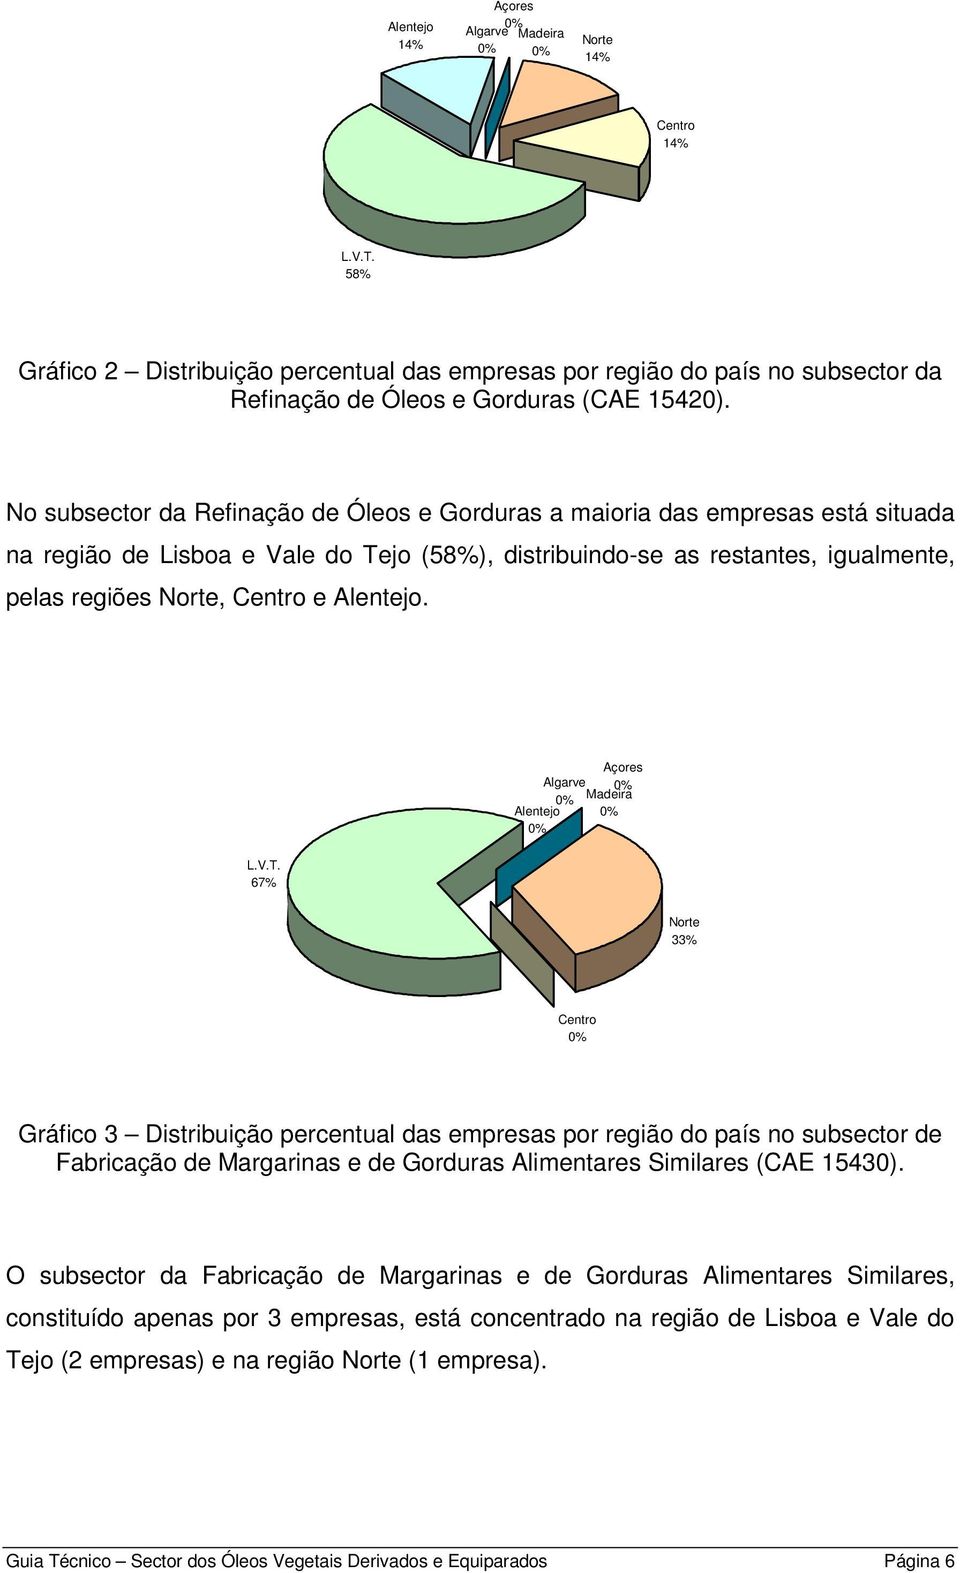 No subsector da Refinação de Óleos e Gorduras a maioria das empresas está situada na região de Lisboa e Vale do Tejo (58%), distribuindo-se as restantes, igualmente, pelas regiões Norte, Centro e